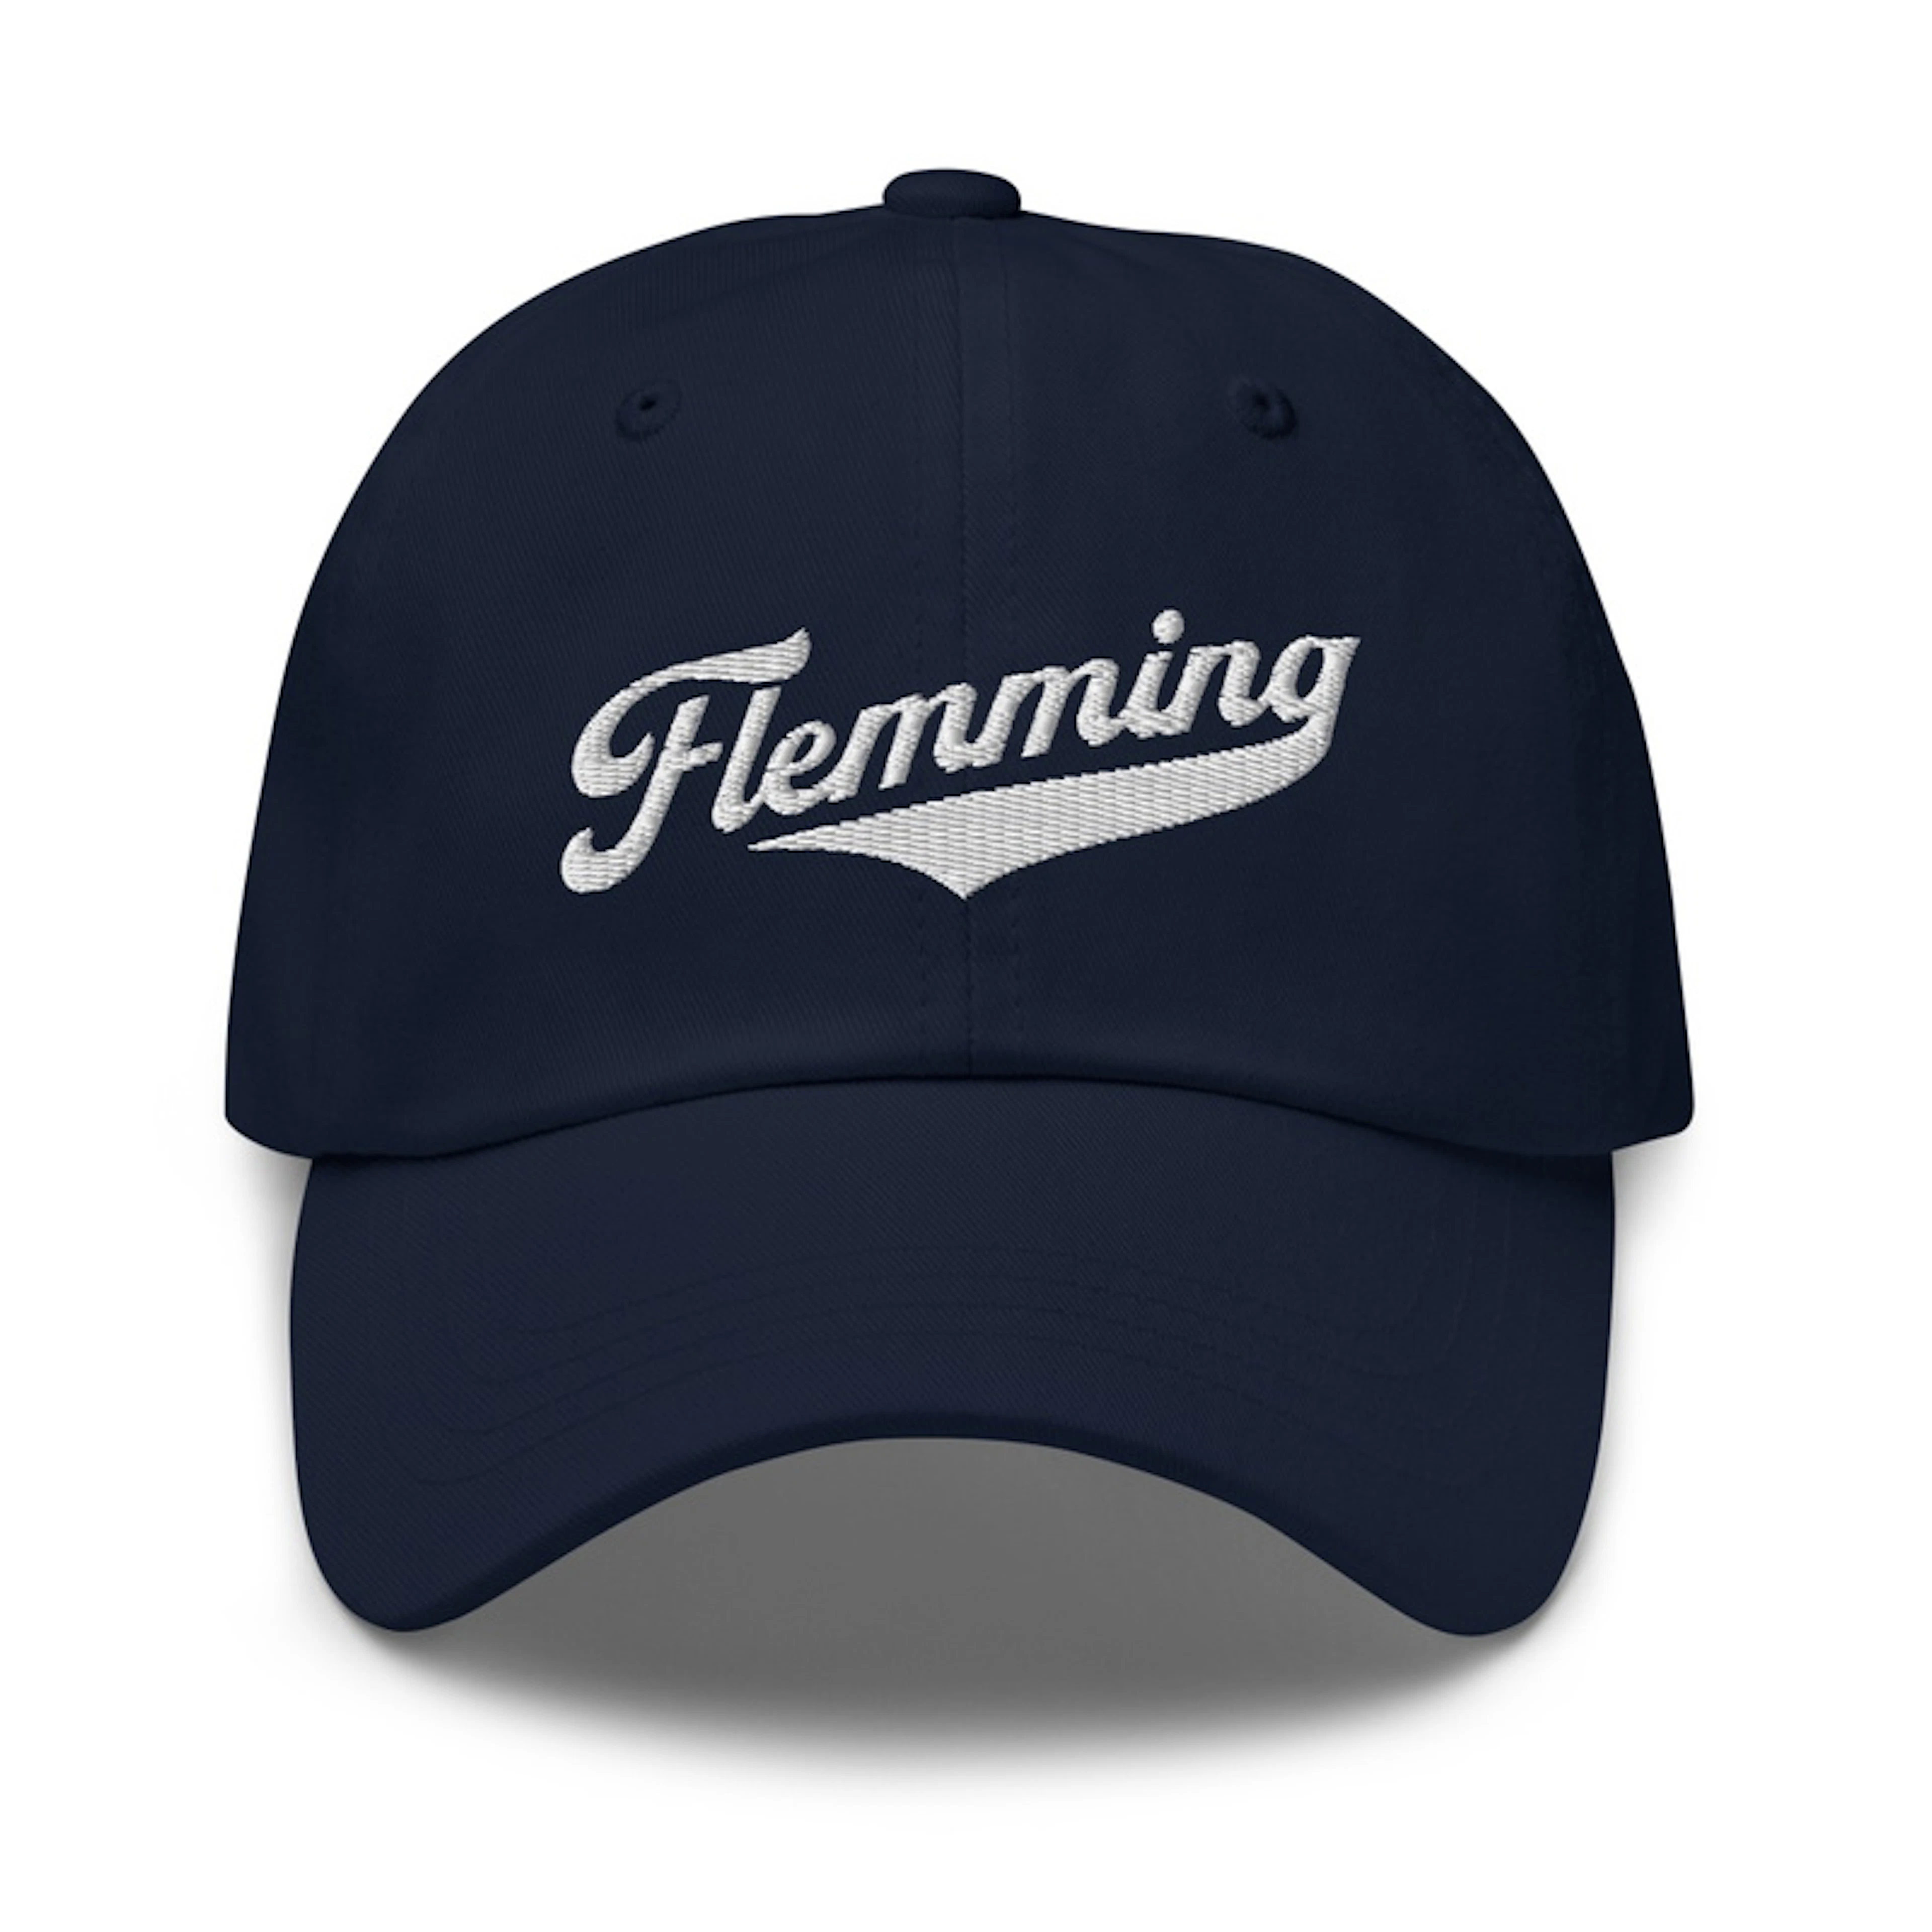 Flemming Ball Cap